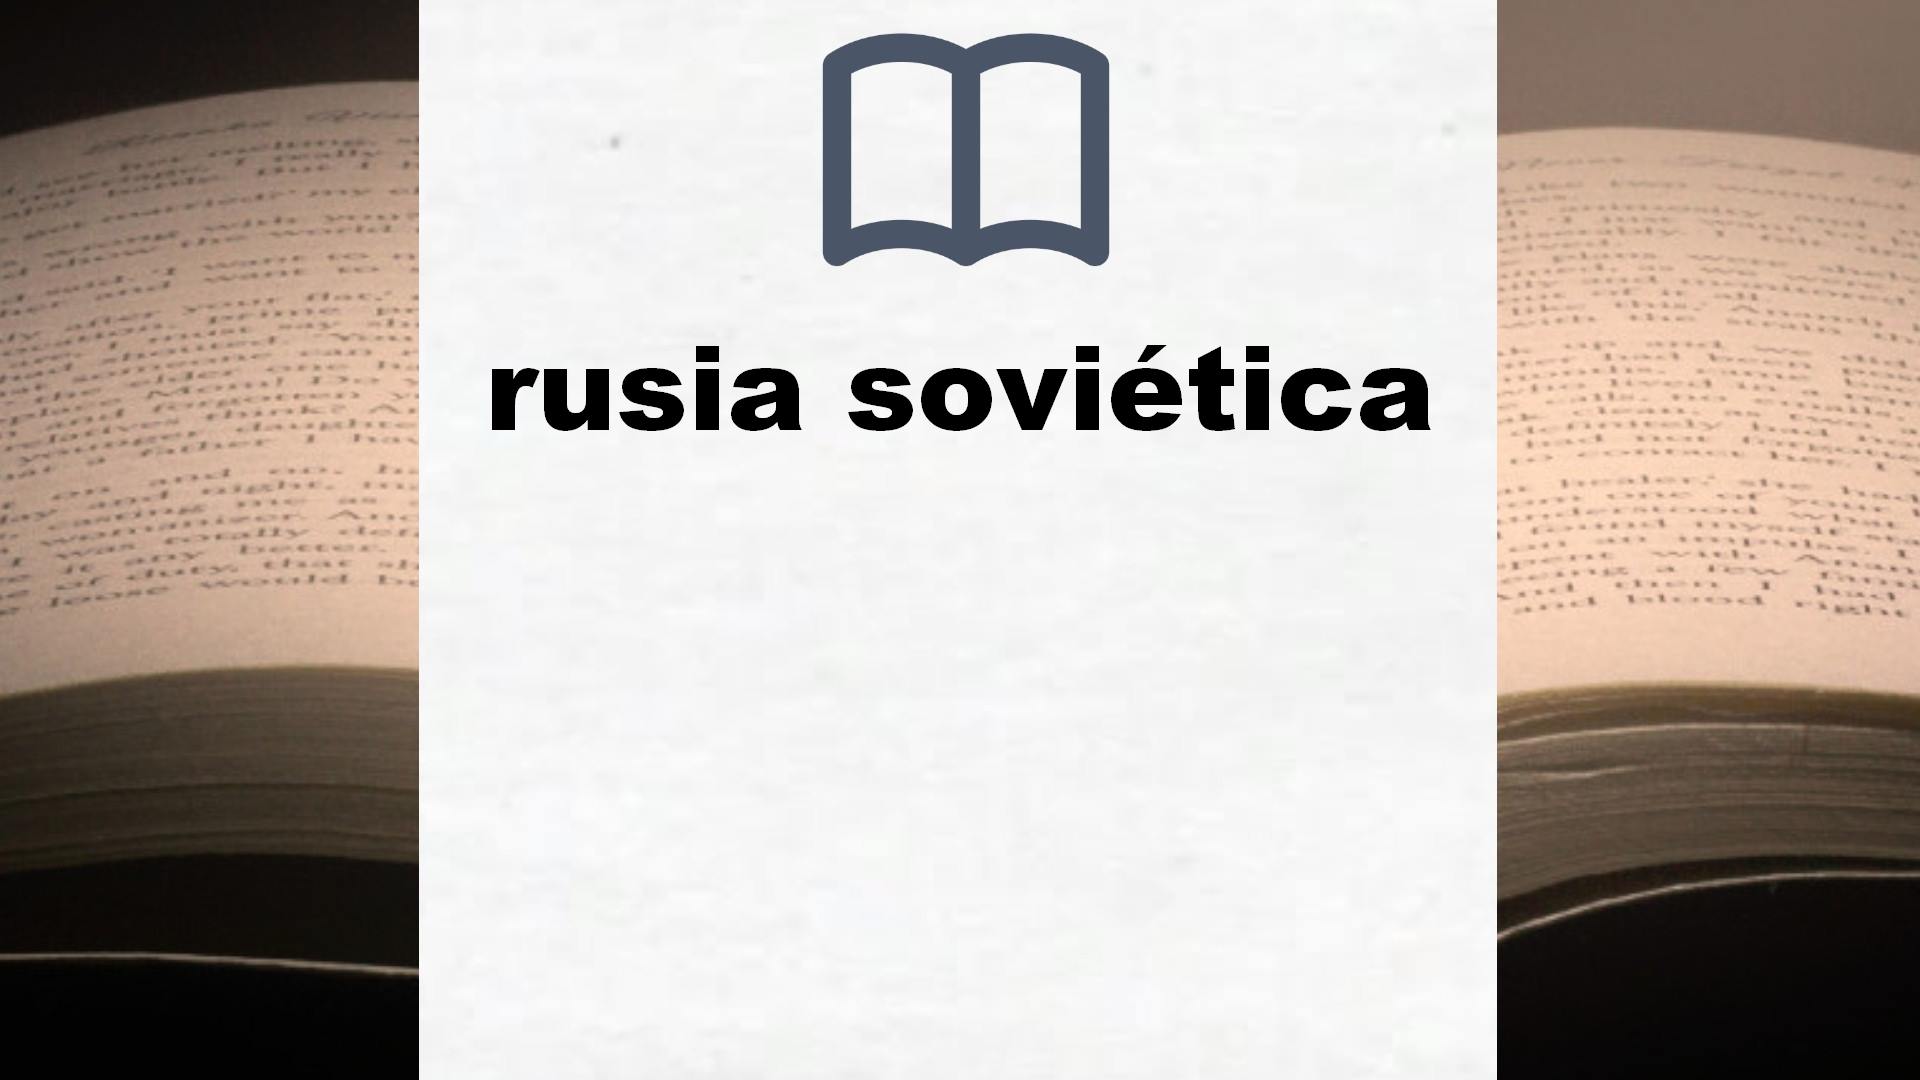 Libros sobre rusia soviética